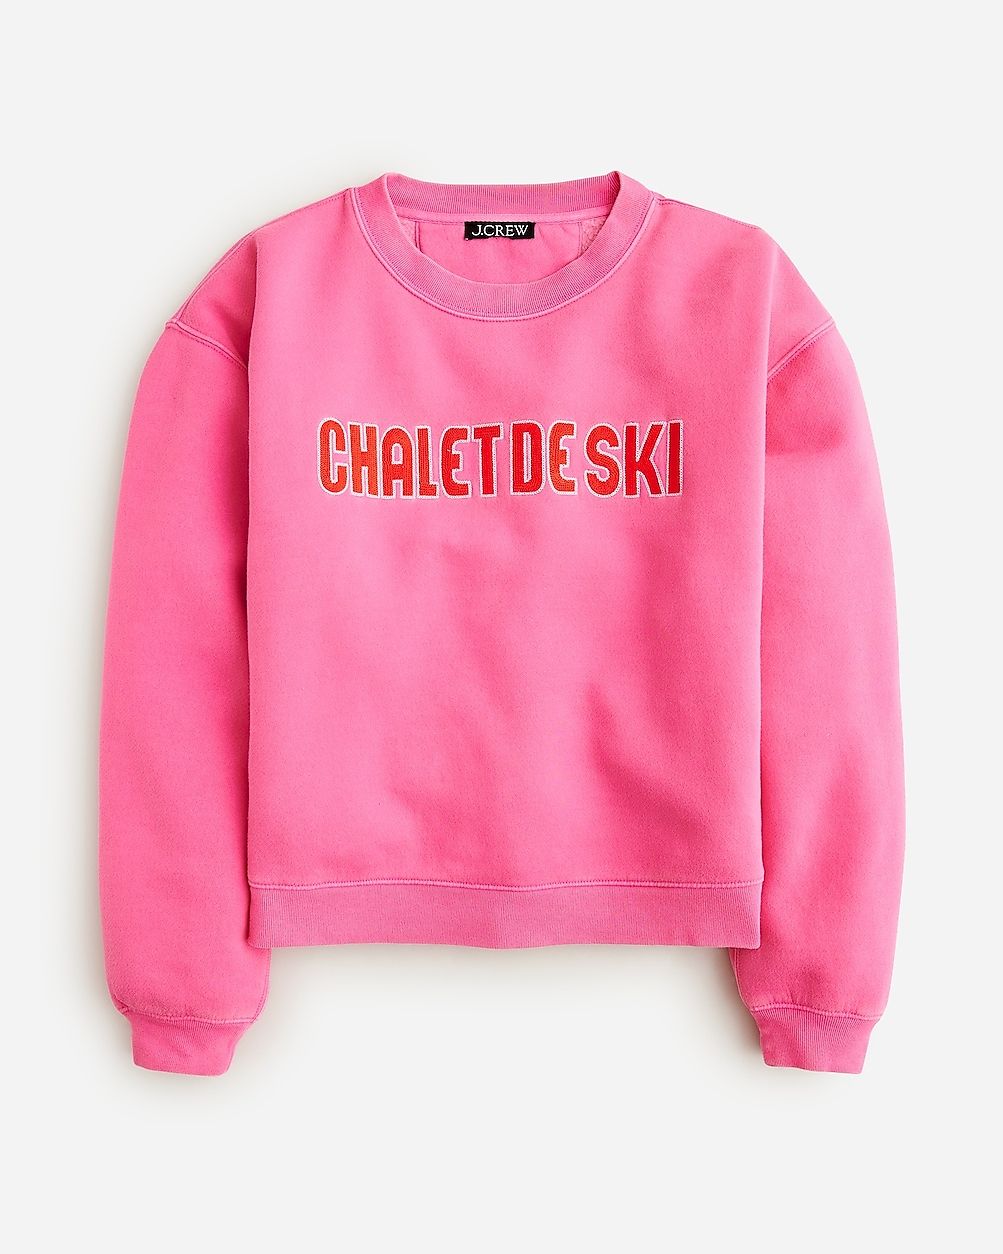 Heritage fleece chalet de ski graphic sweatshirt | J.Crew US